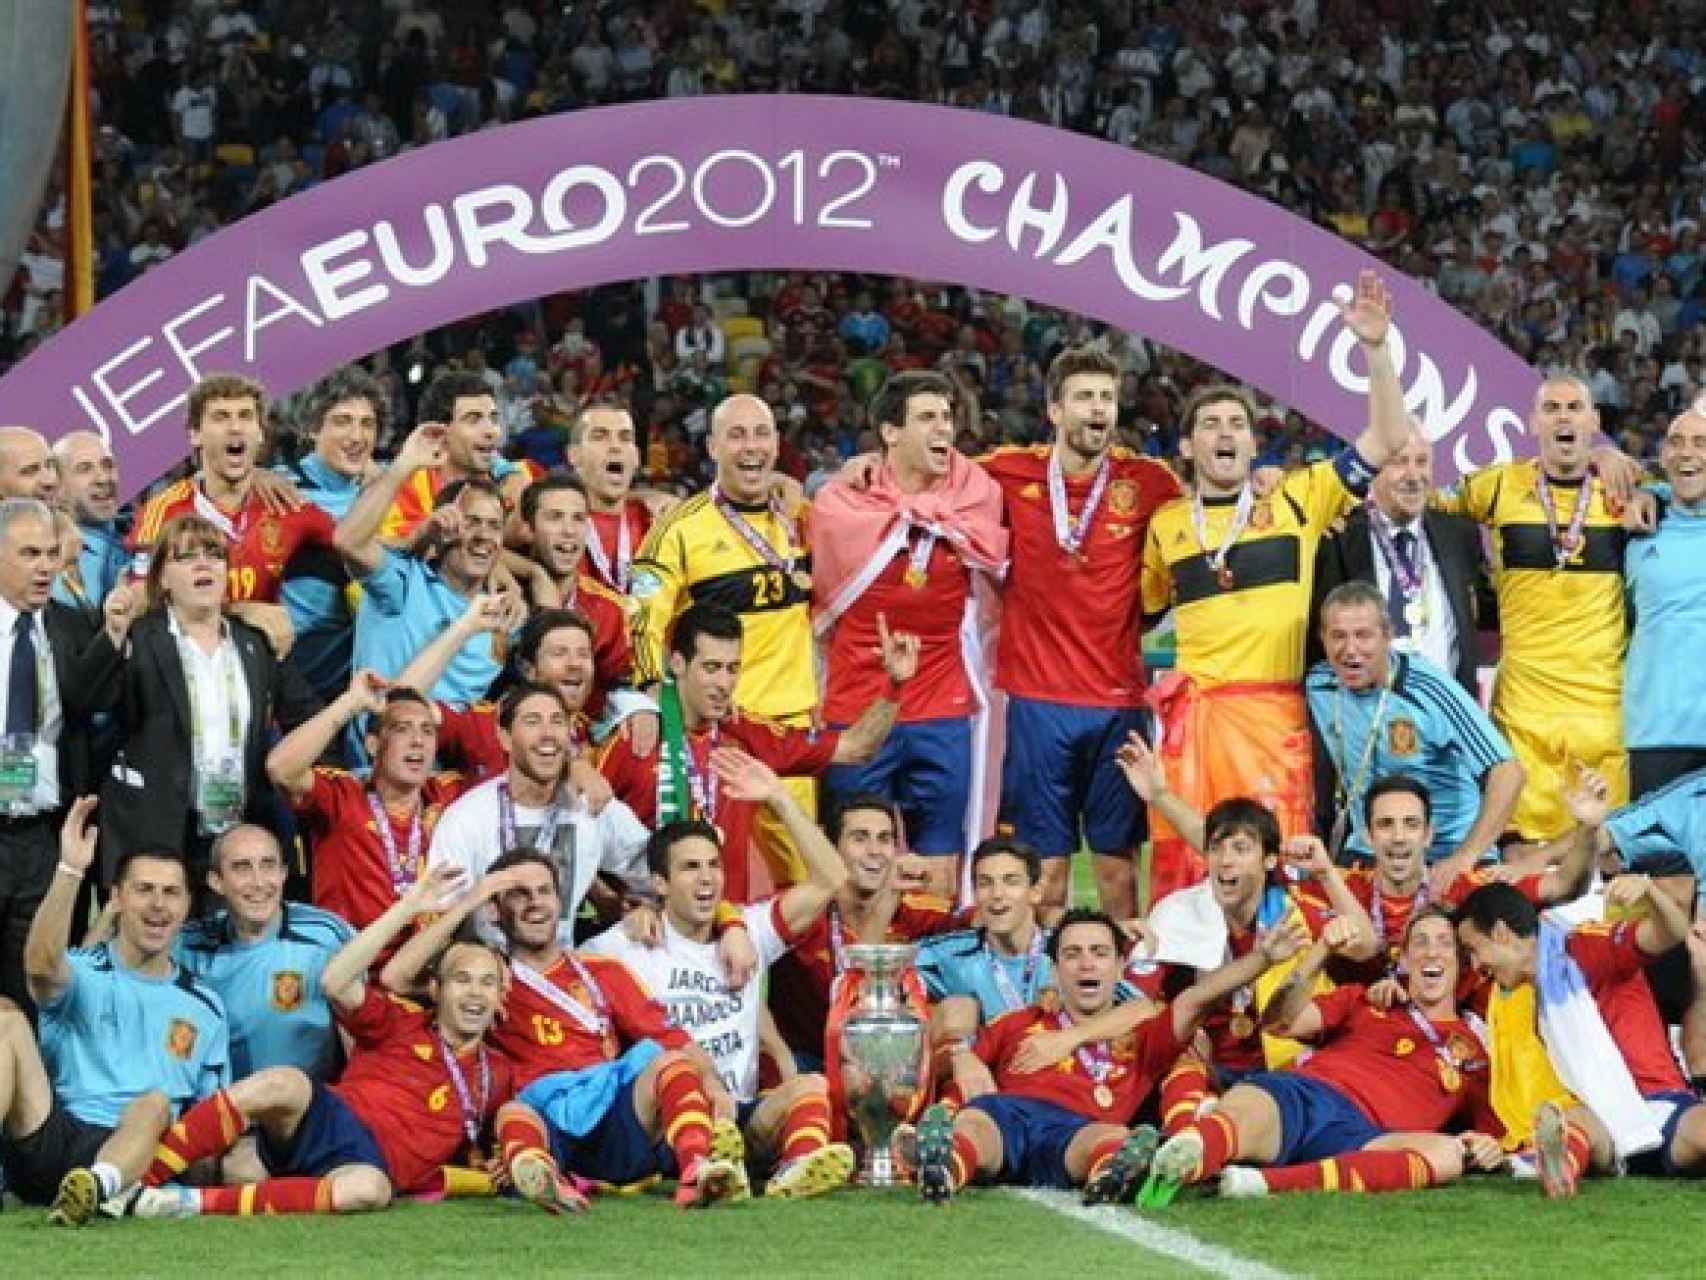 La selección española de fútbol celebra la Eurocopa de 2012. Efectivamente, no hubo dos sin tres pero sí ha habido tres sin cuatro.